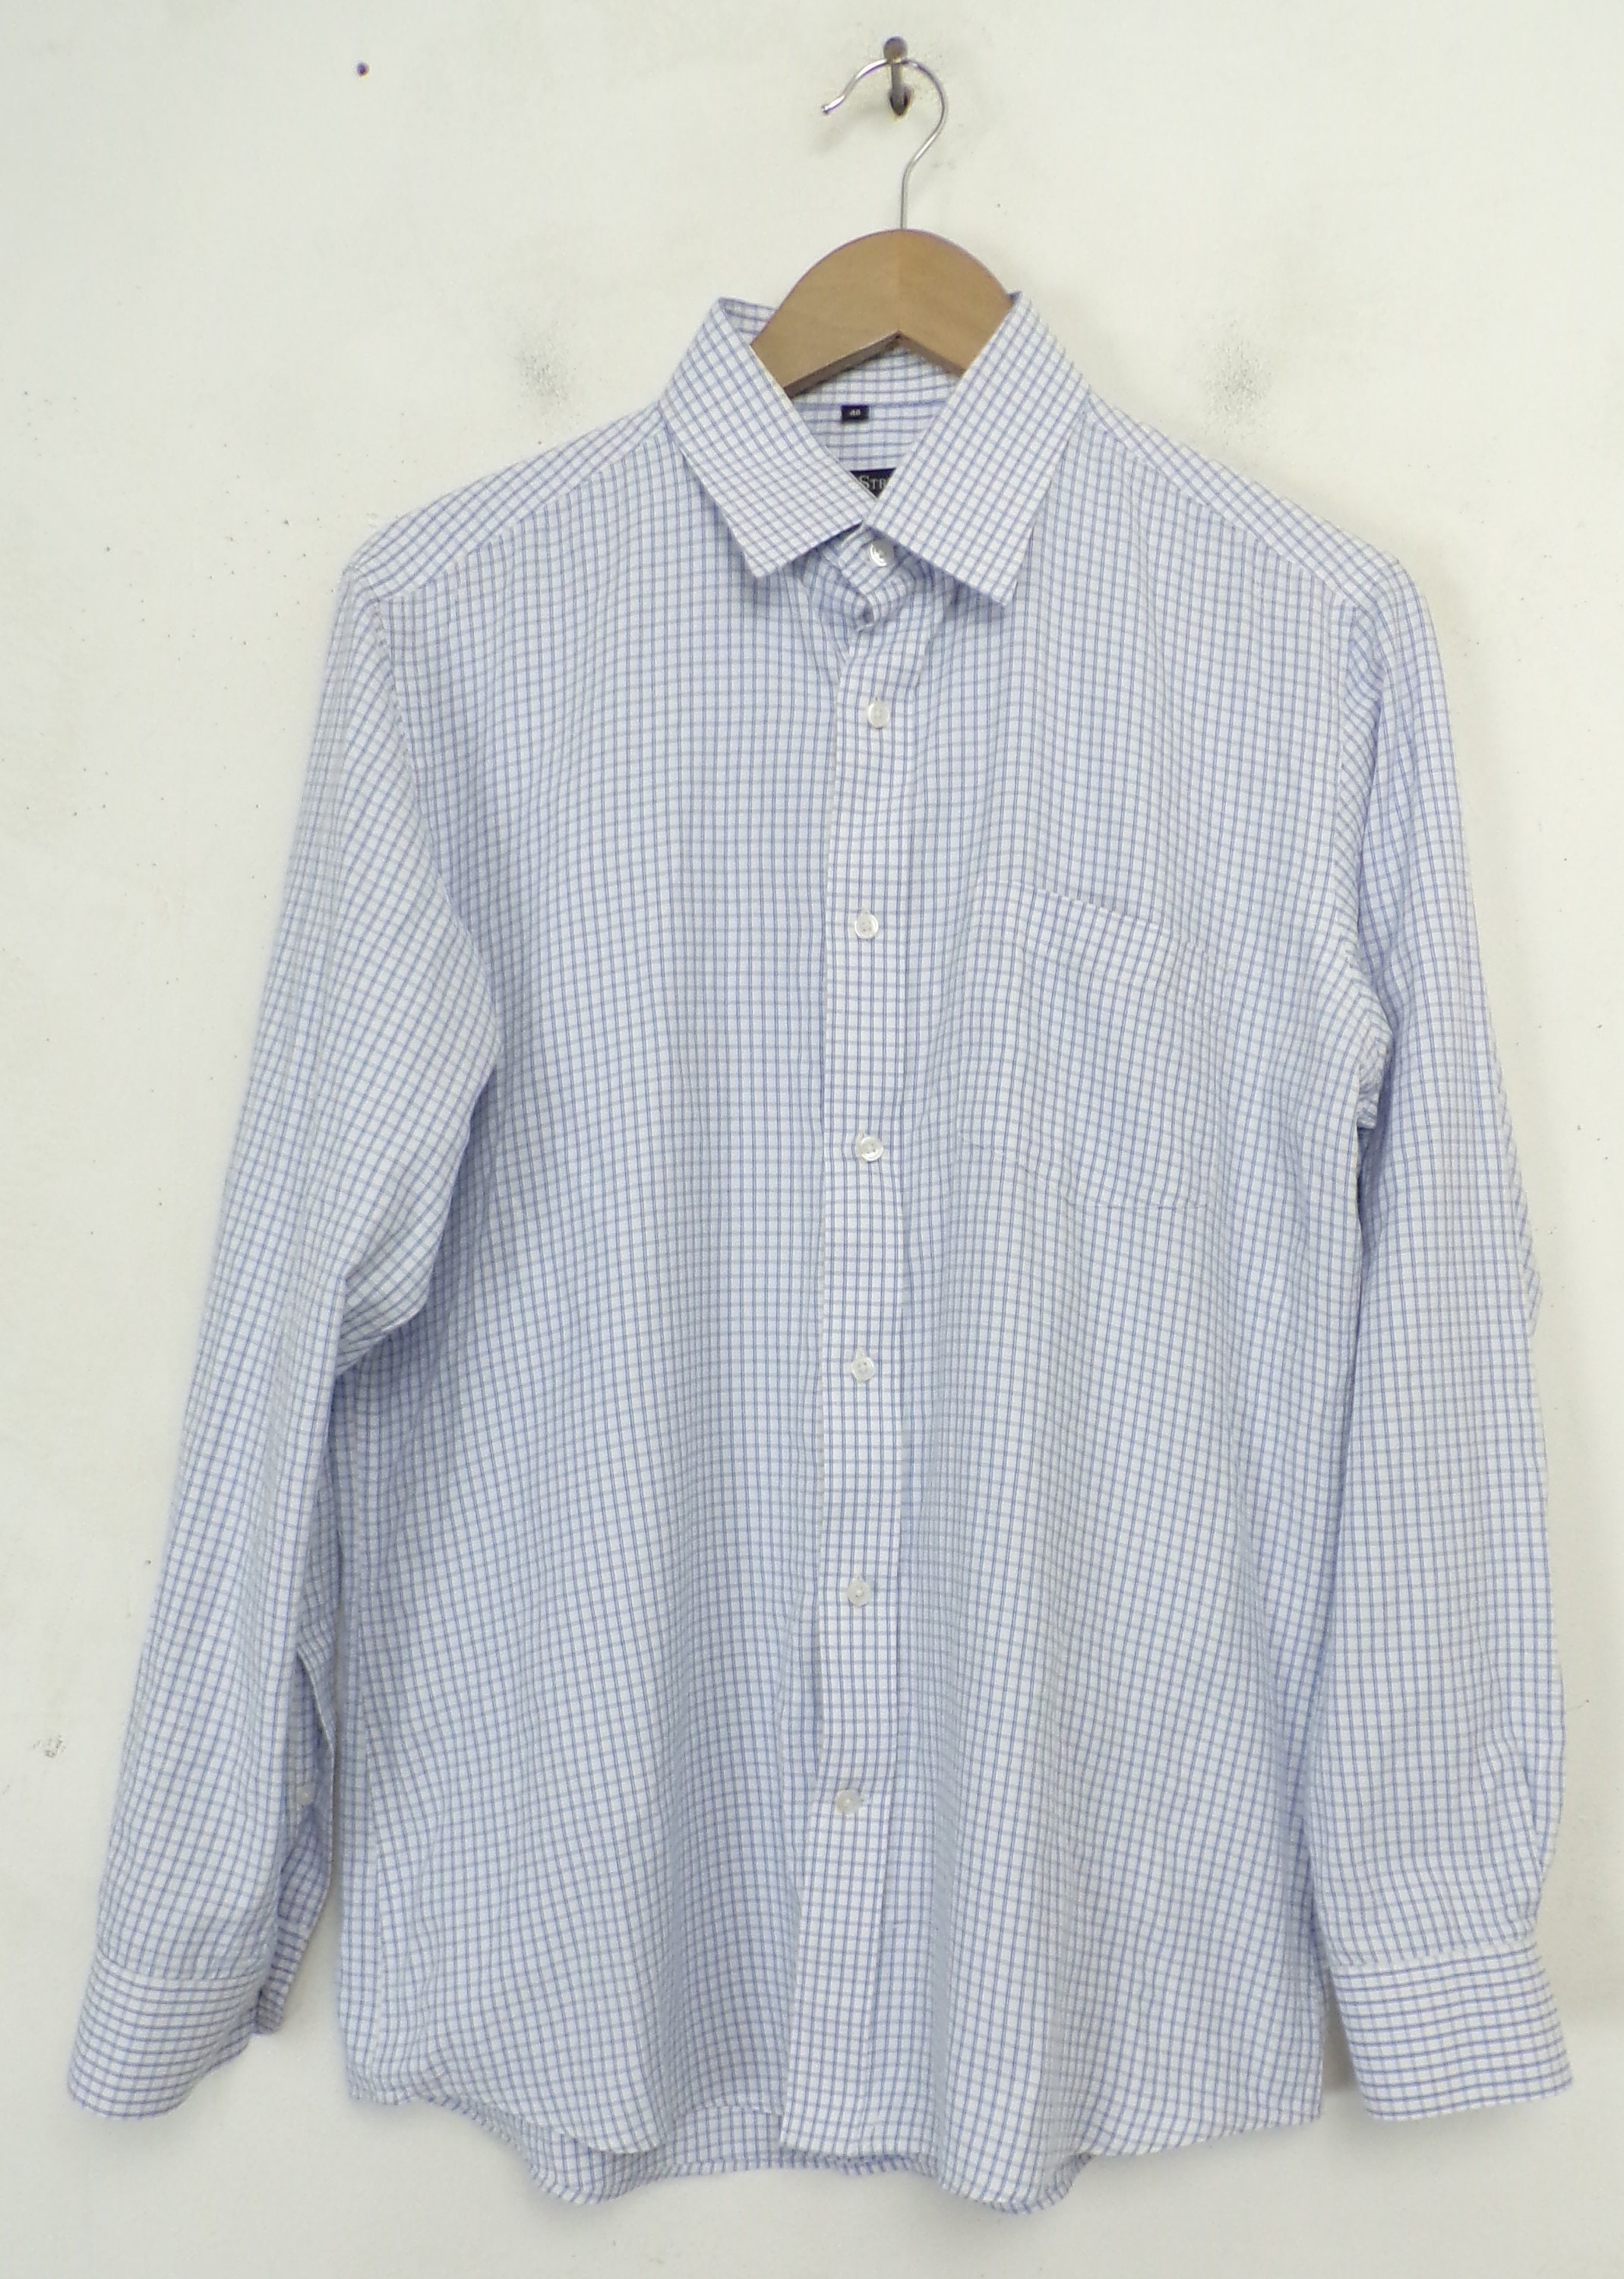 Vintage White & Blue Plaid Dress Shirt Mens Medium Plaid - Etsy